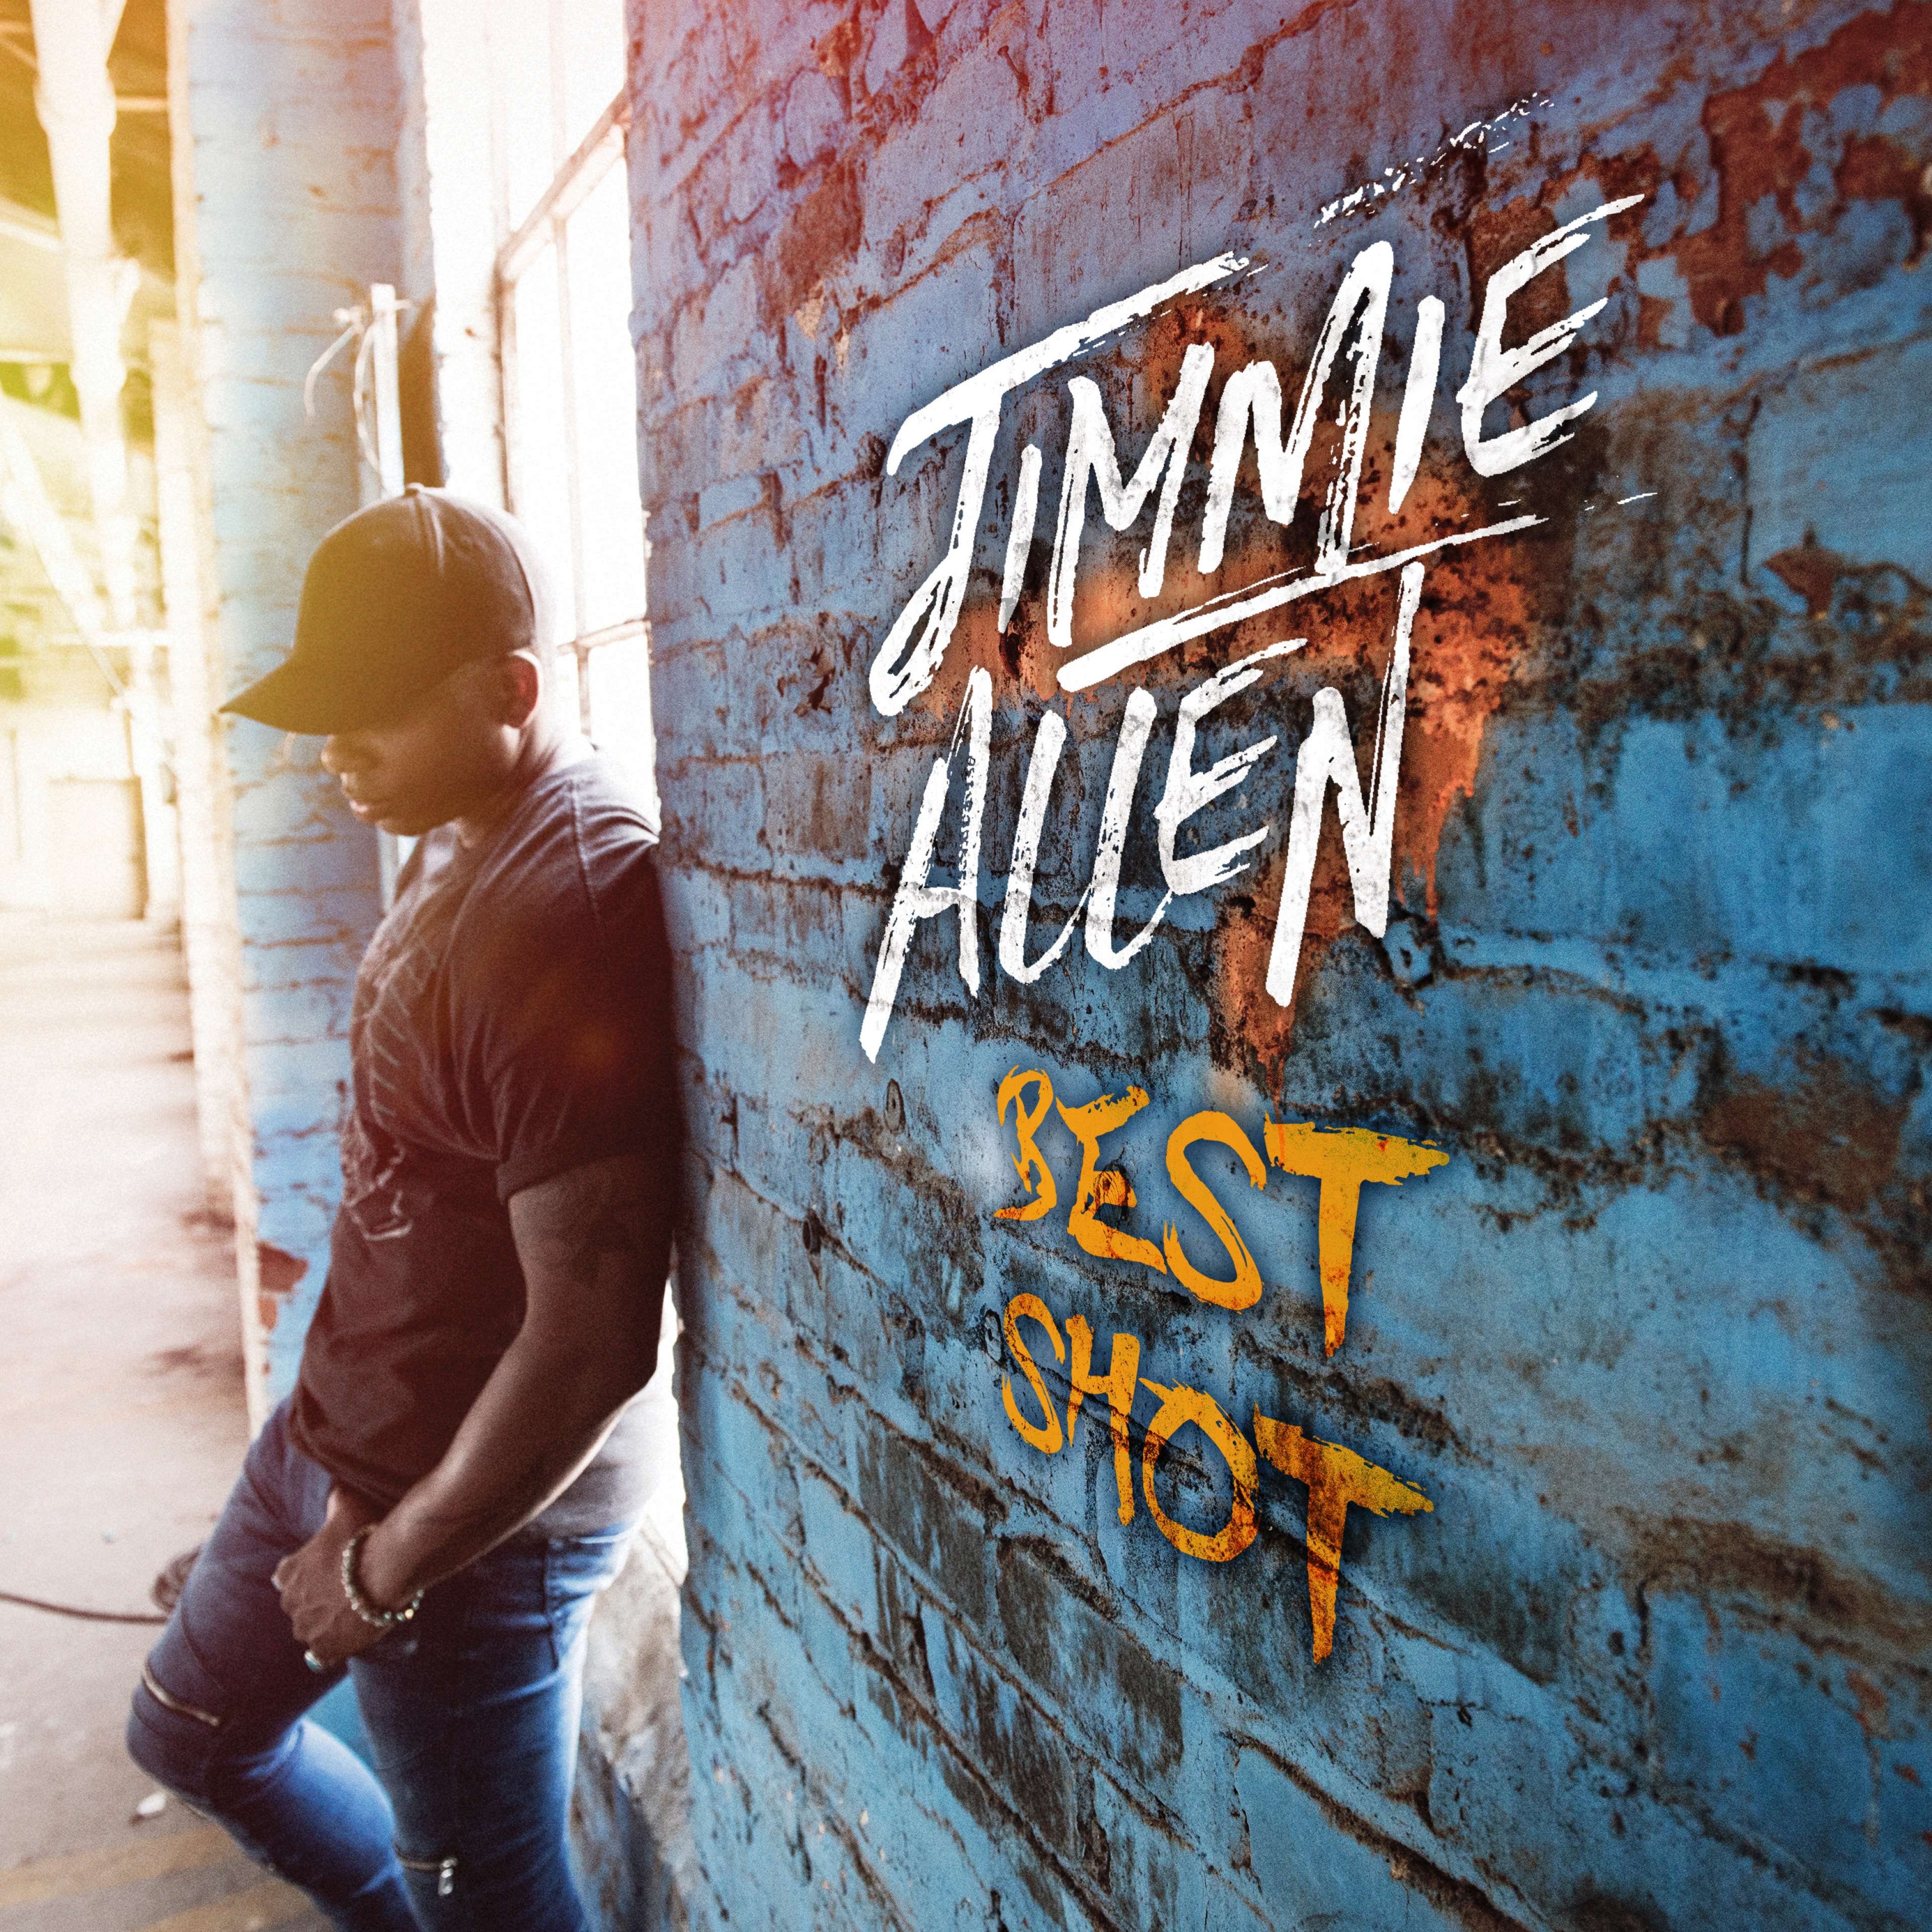 Jimmie Allen's debut single, 